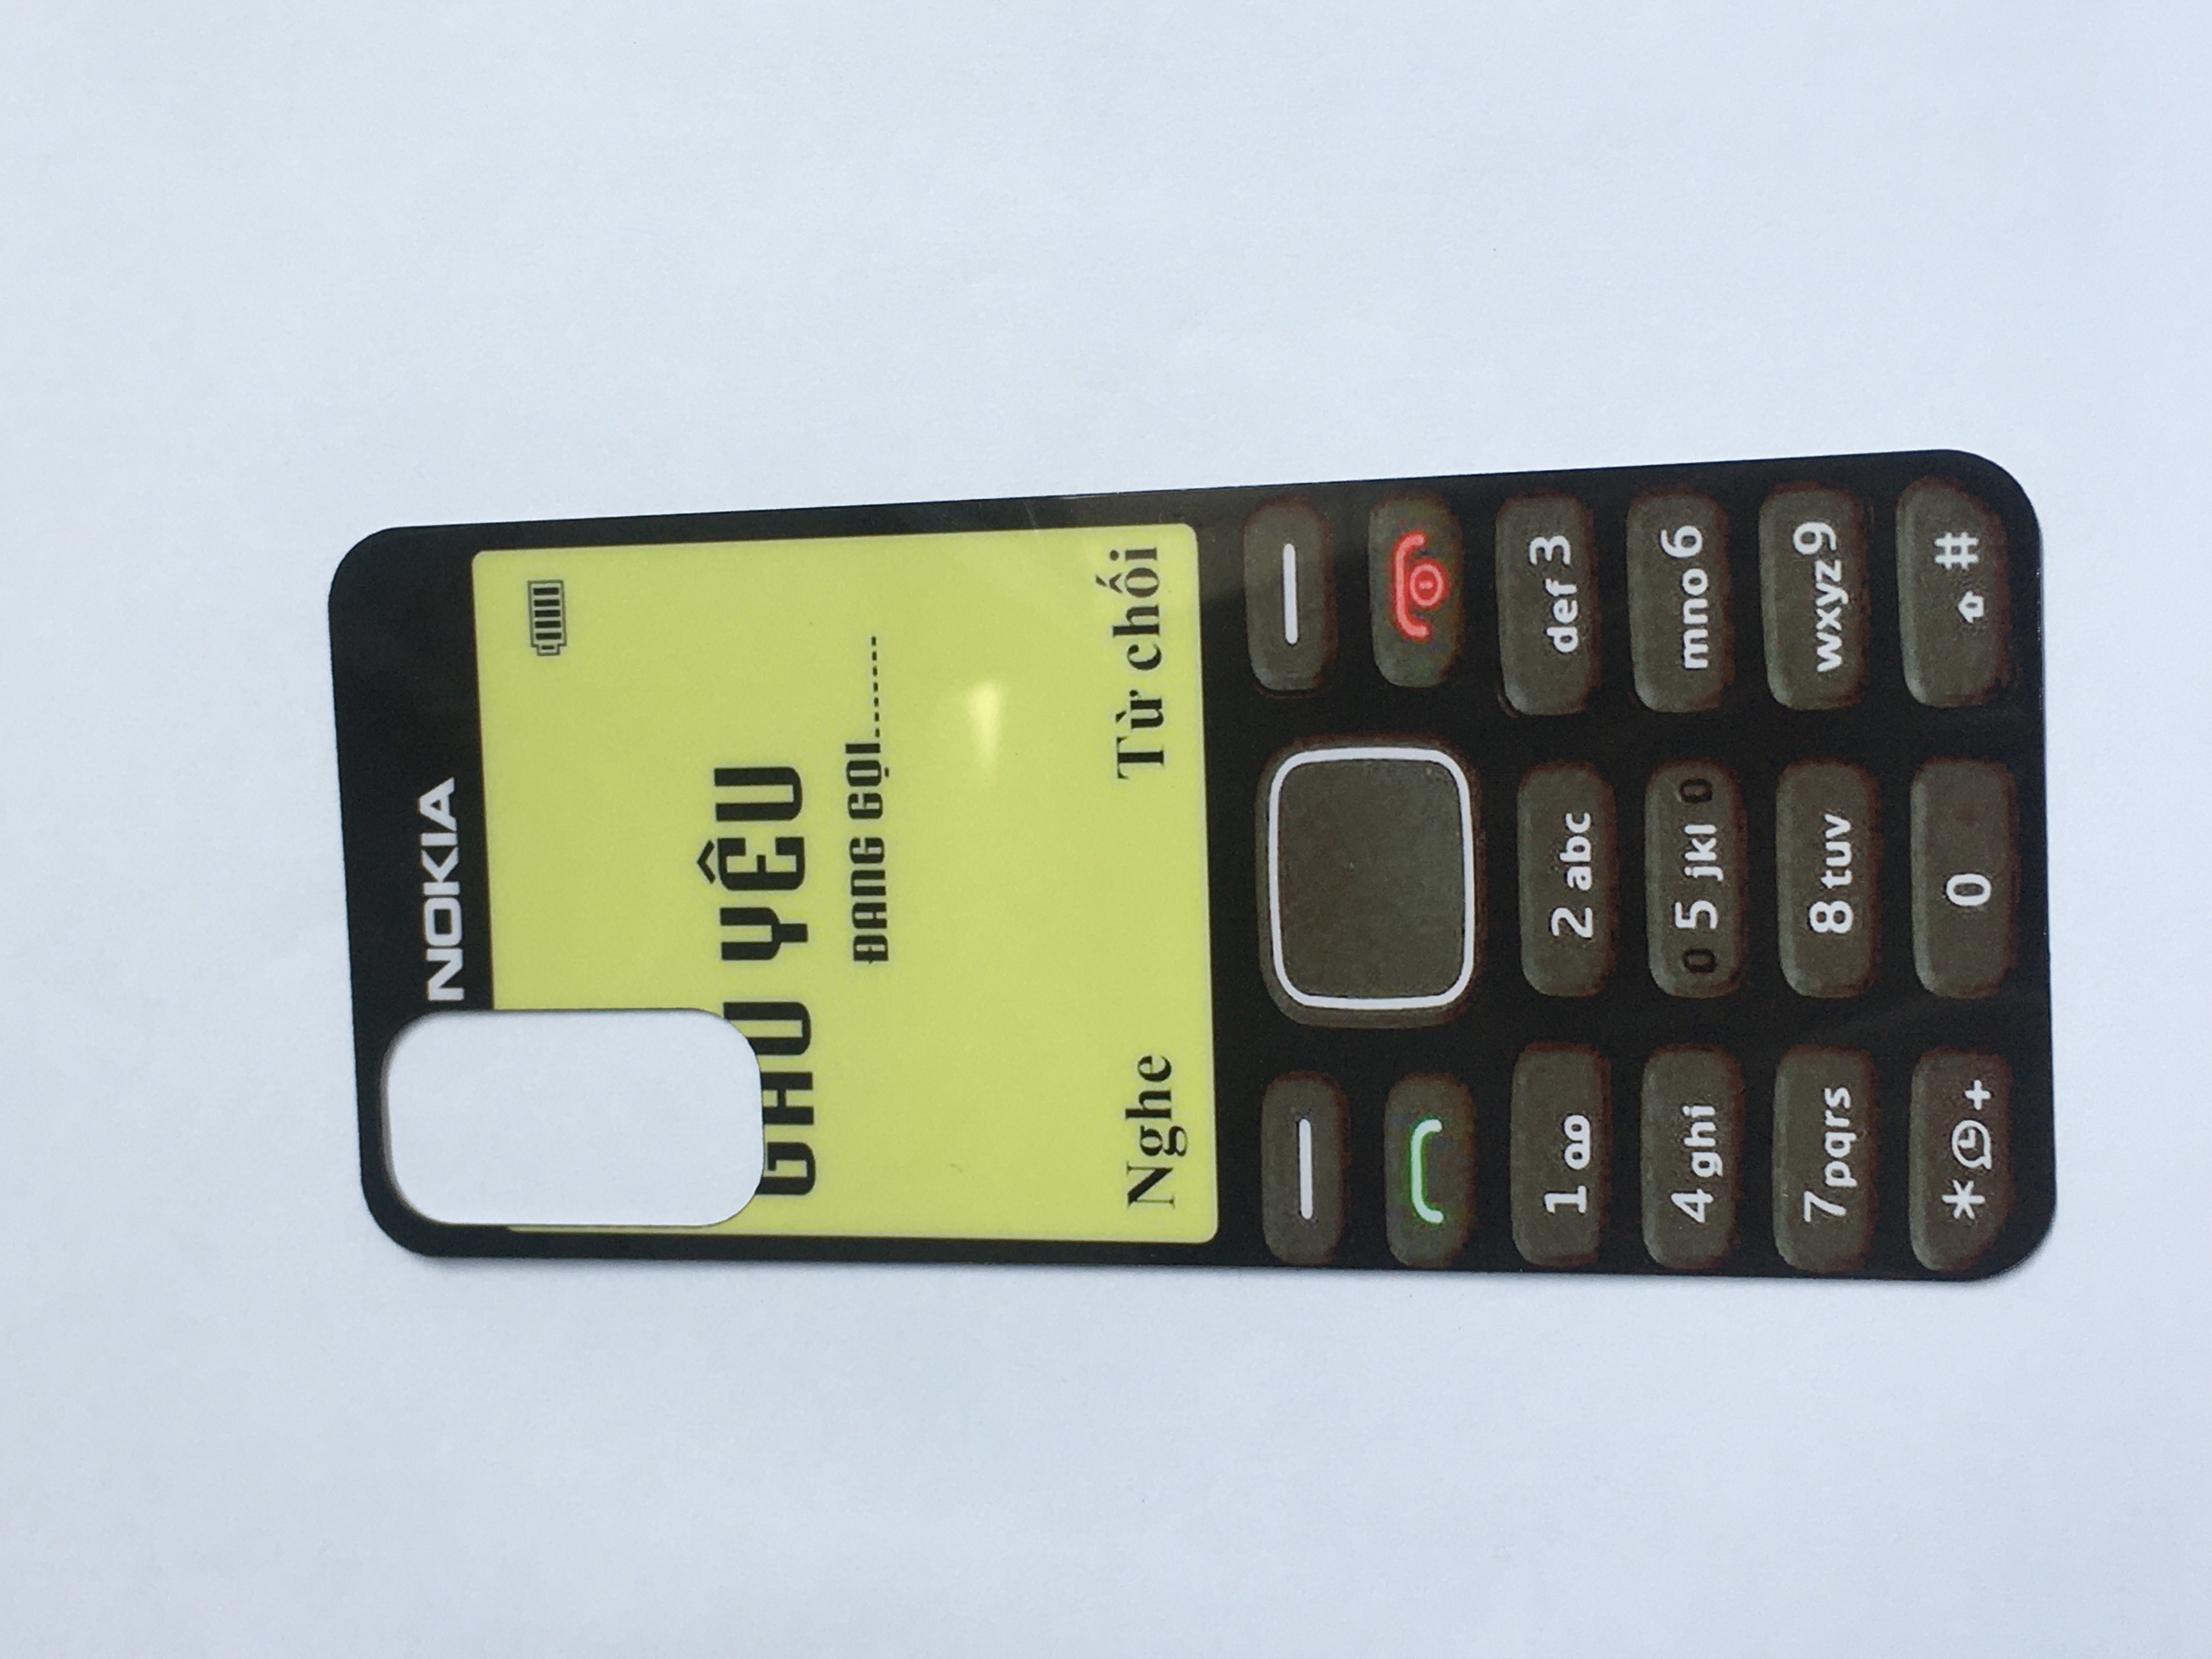 Tổng hợp Nokia 1280 Hình Nền giá rẻ bán chạy tháng 72023  BeeCost